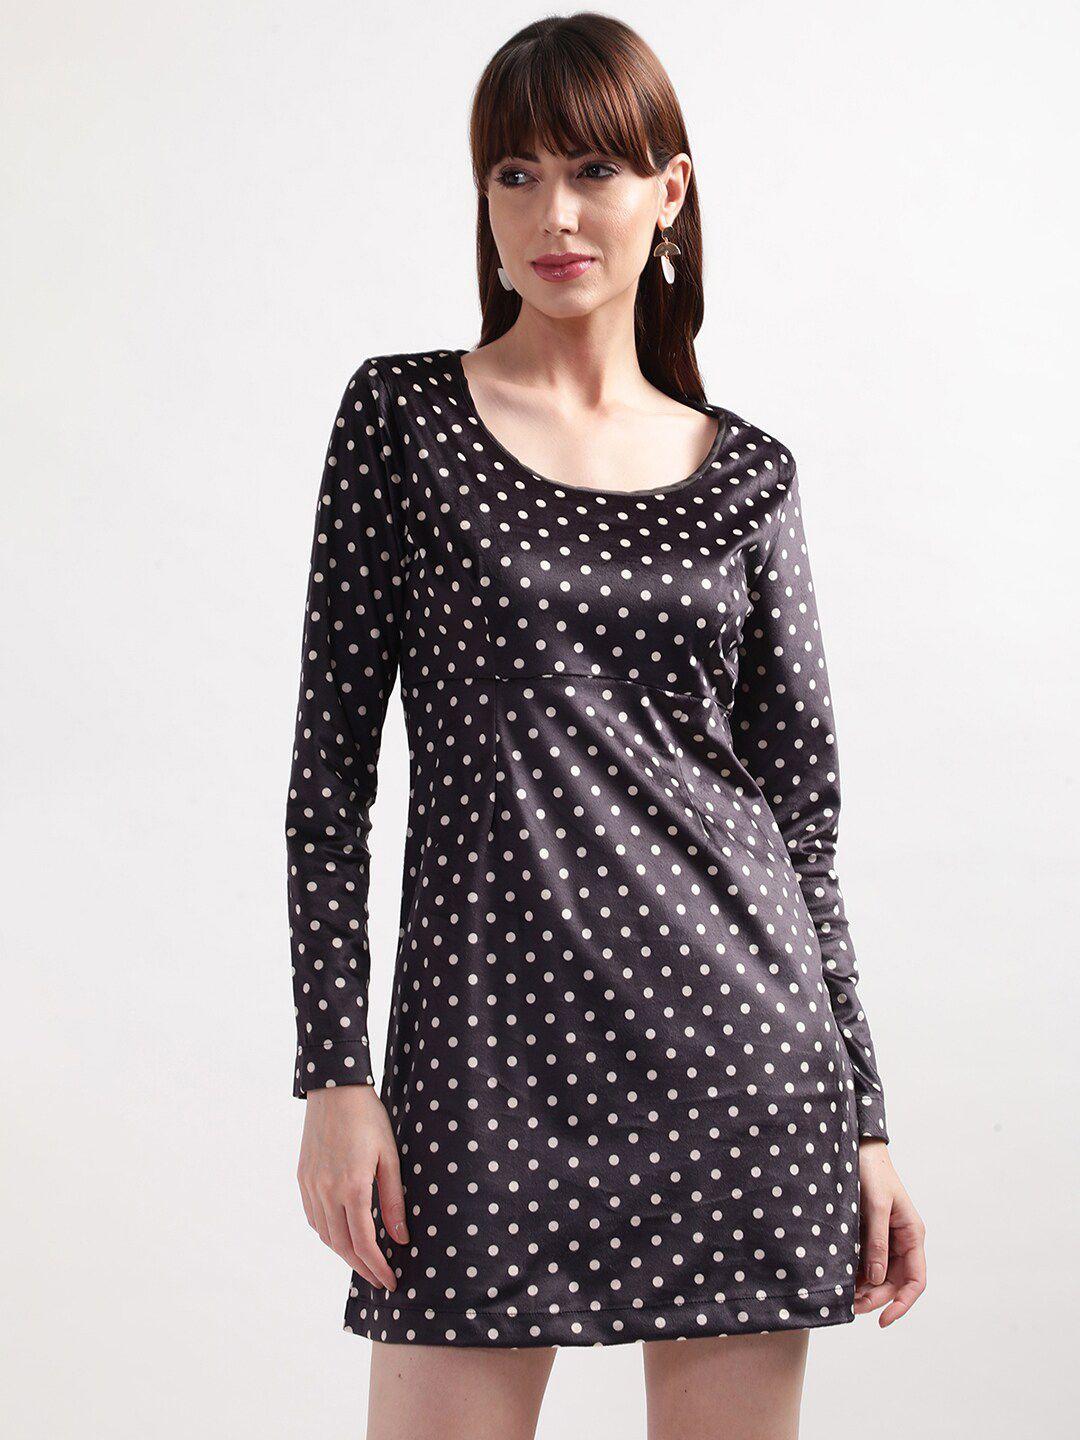 elle-women-black-&-white-polka-dots-printed-a-line-dress